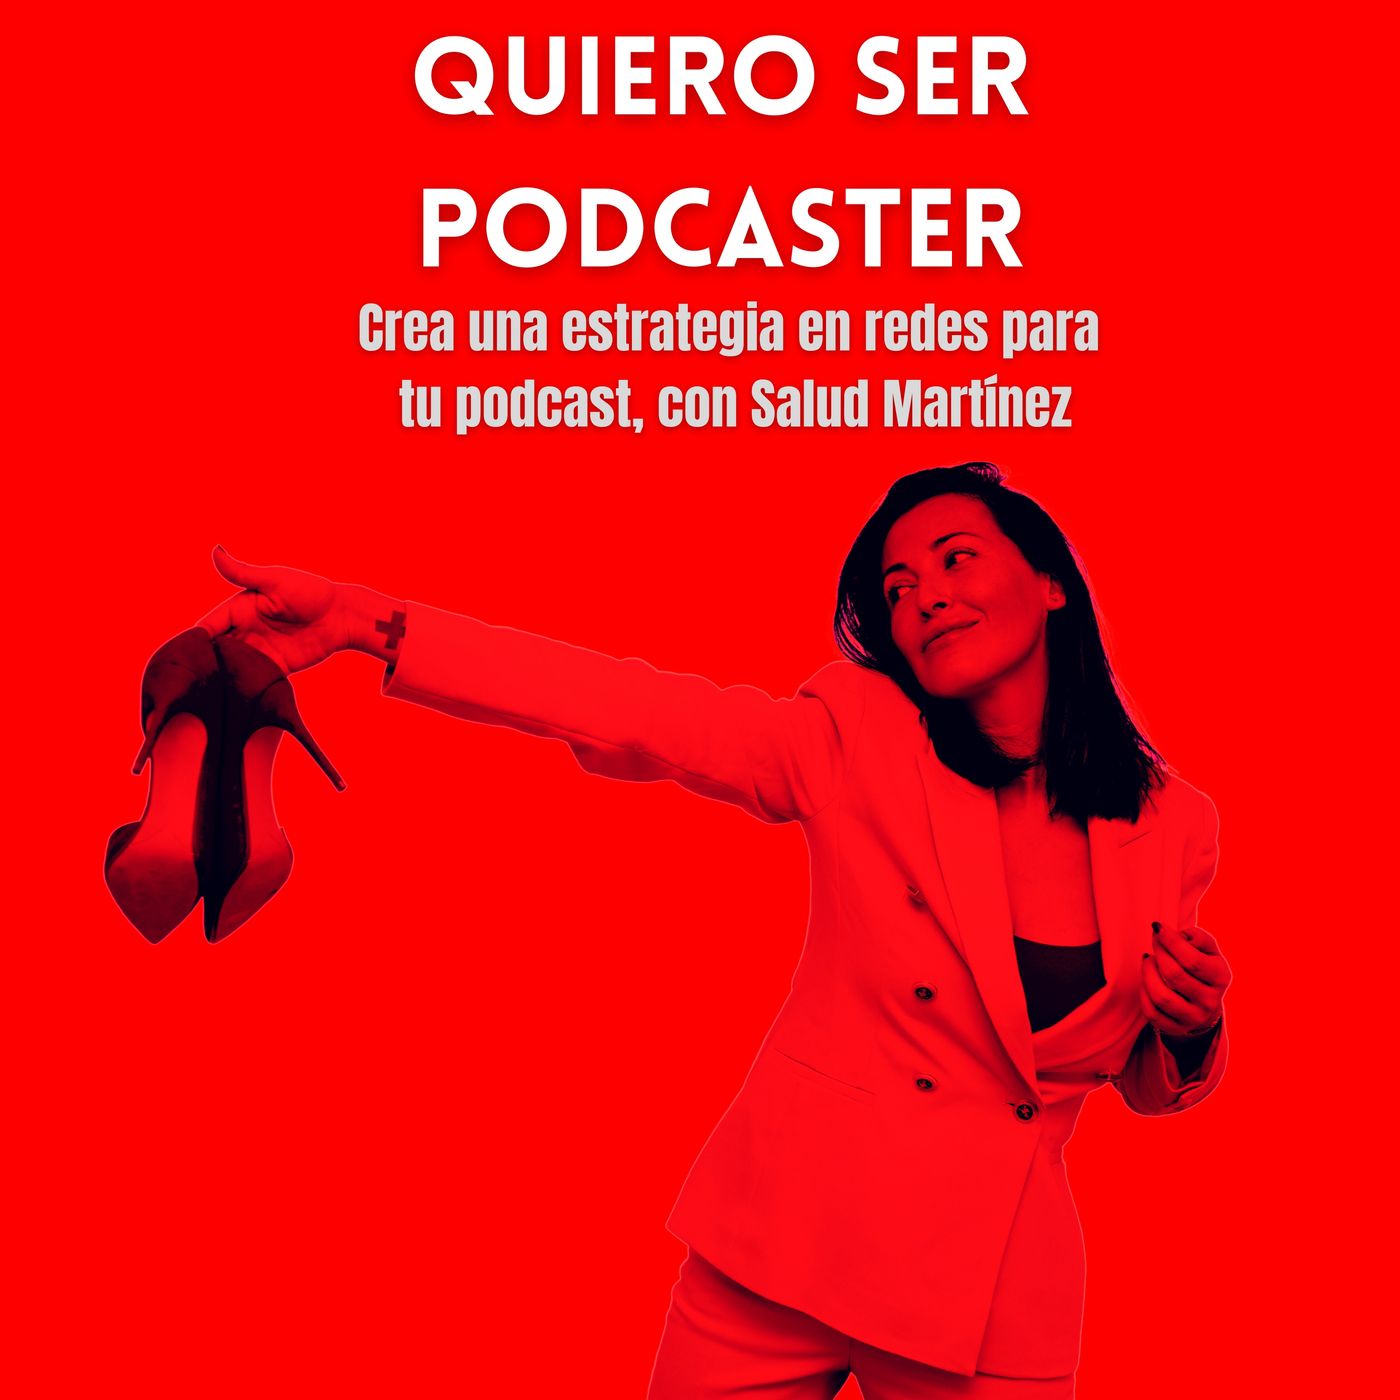 Crea una estrategia en redes para tu podcast, con Salud Martínez @saludmartinez_